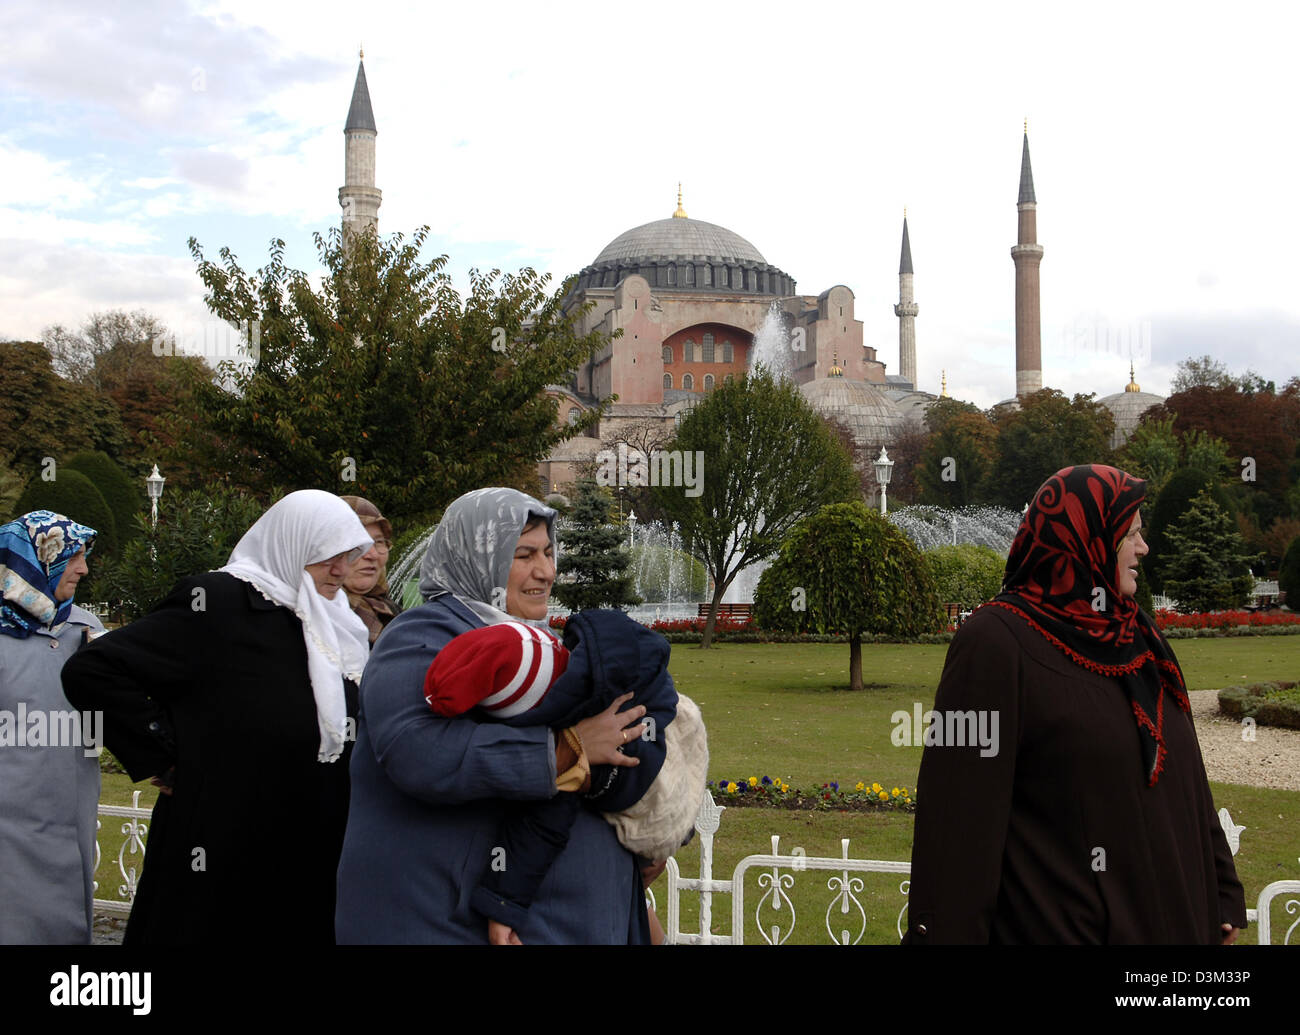 (Dpa) - Türkische Frauen mit Headscraf vor der Hagia Sophia in Istanbul, Türkei, 19. Oktober 2005. Die Hagia Sophia, die "Kirche der göttlichen Weisheit" wurde von 532 bis 537 gebaut und ist 55,60 m hoch. Die Kirche wurde nach der Eroberung von Constantinopel durch Mehmet II in eine Moschee umgewandelt und mit vier Minaretten ausgestattet. Seit 1934 ist es ein Museum. Es wurde auf die UNESCO aufgeführt Stockfoto